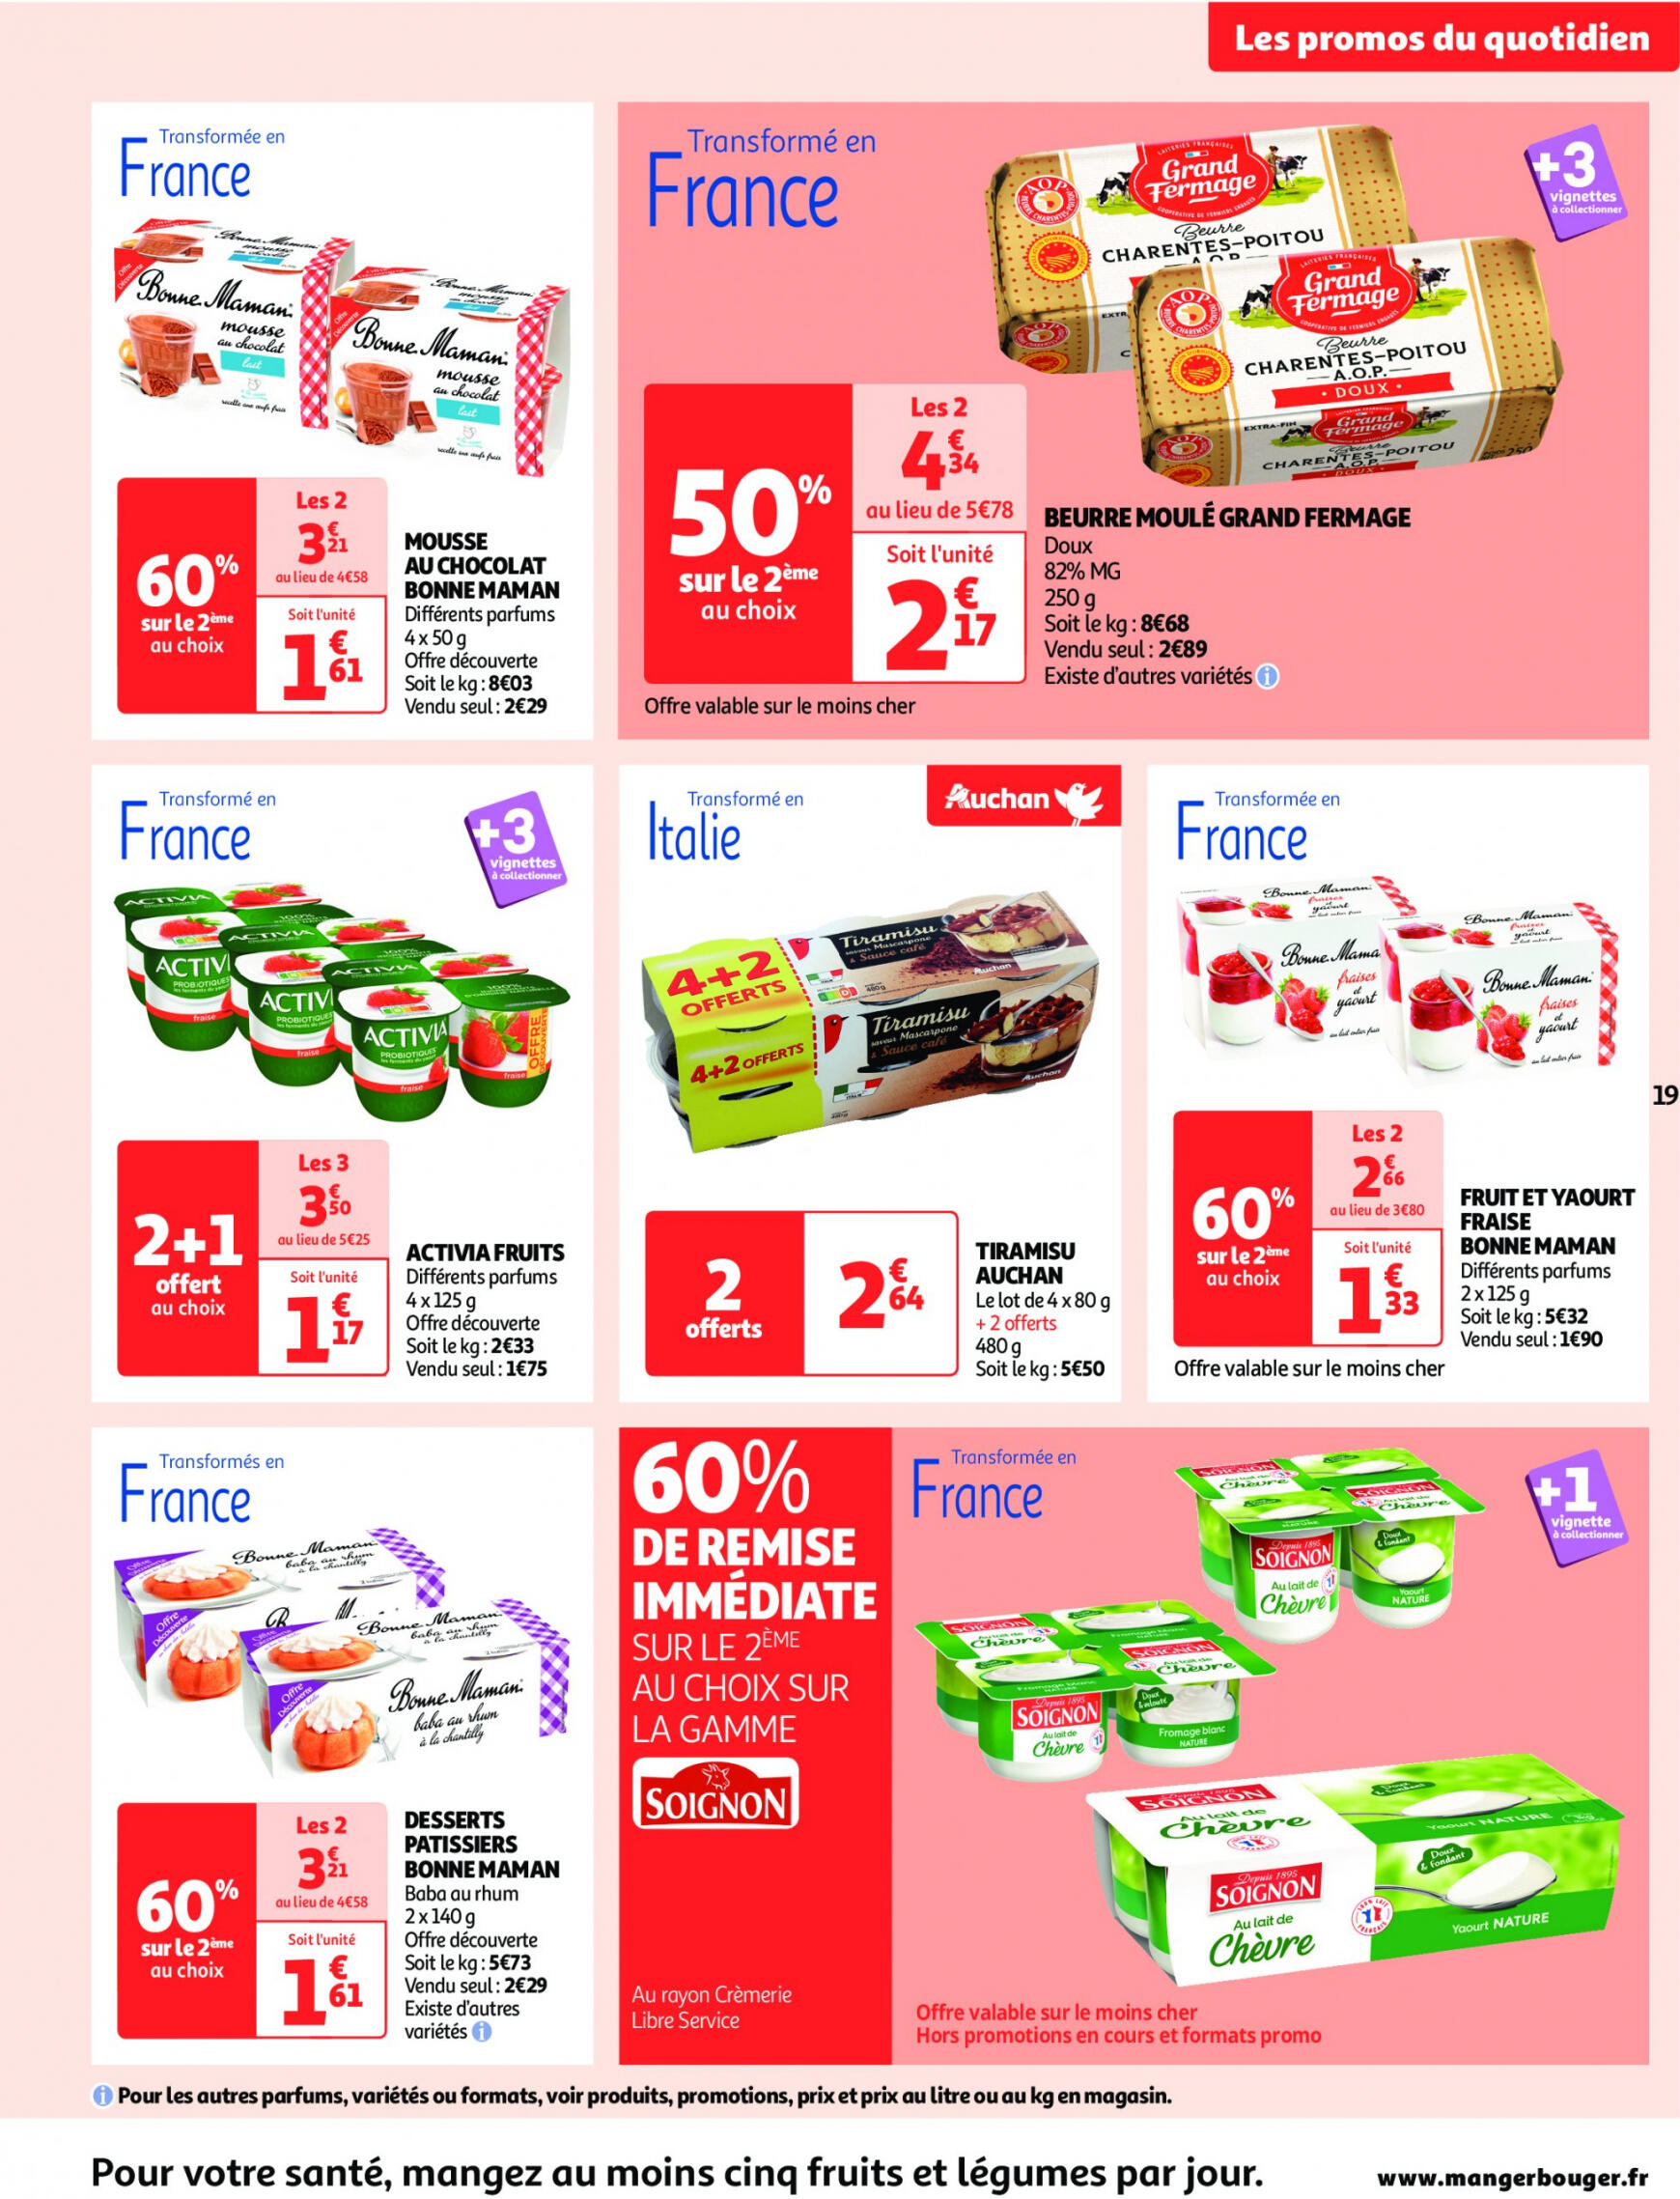 auchan - Auchan supermarché - Faites le plein de bonnes affaires folder huidig 22.05. - 26.05. - page: 19